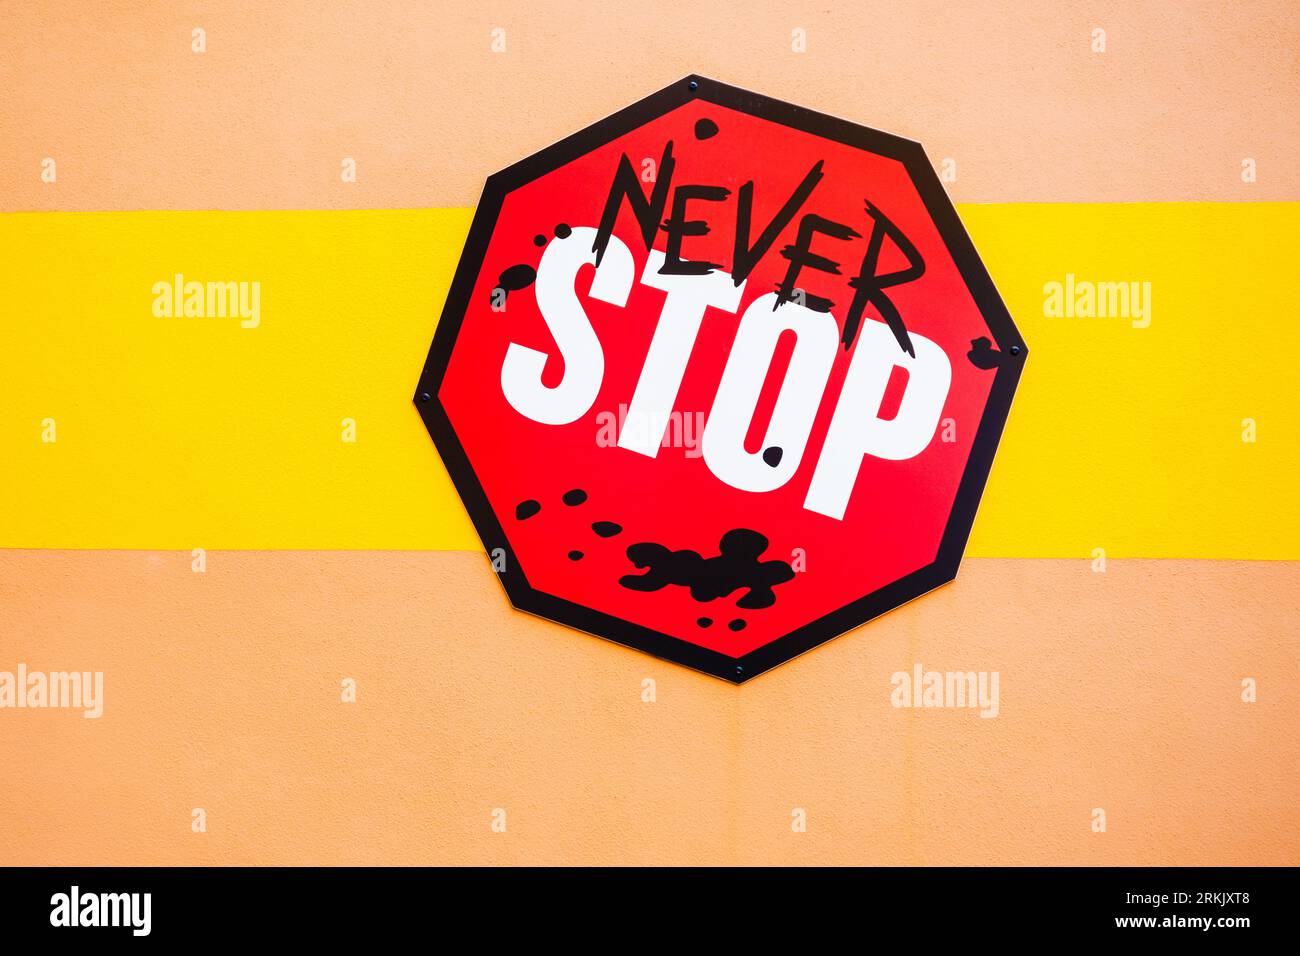 Signieren Sie an einer Wand mit dem Slogan „Never Stop“ Stockfoto